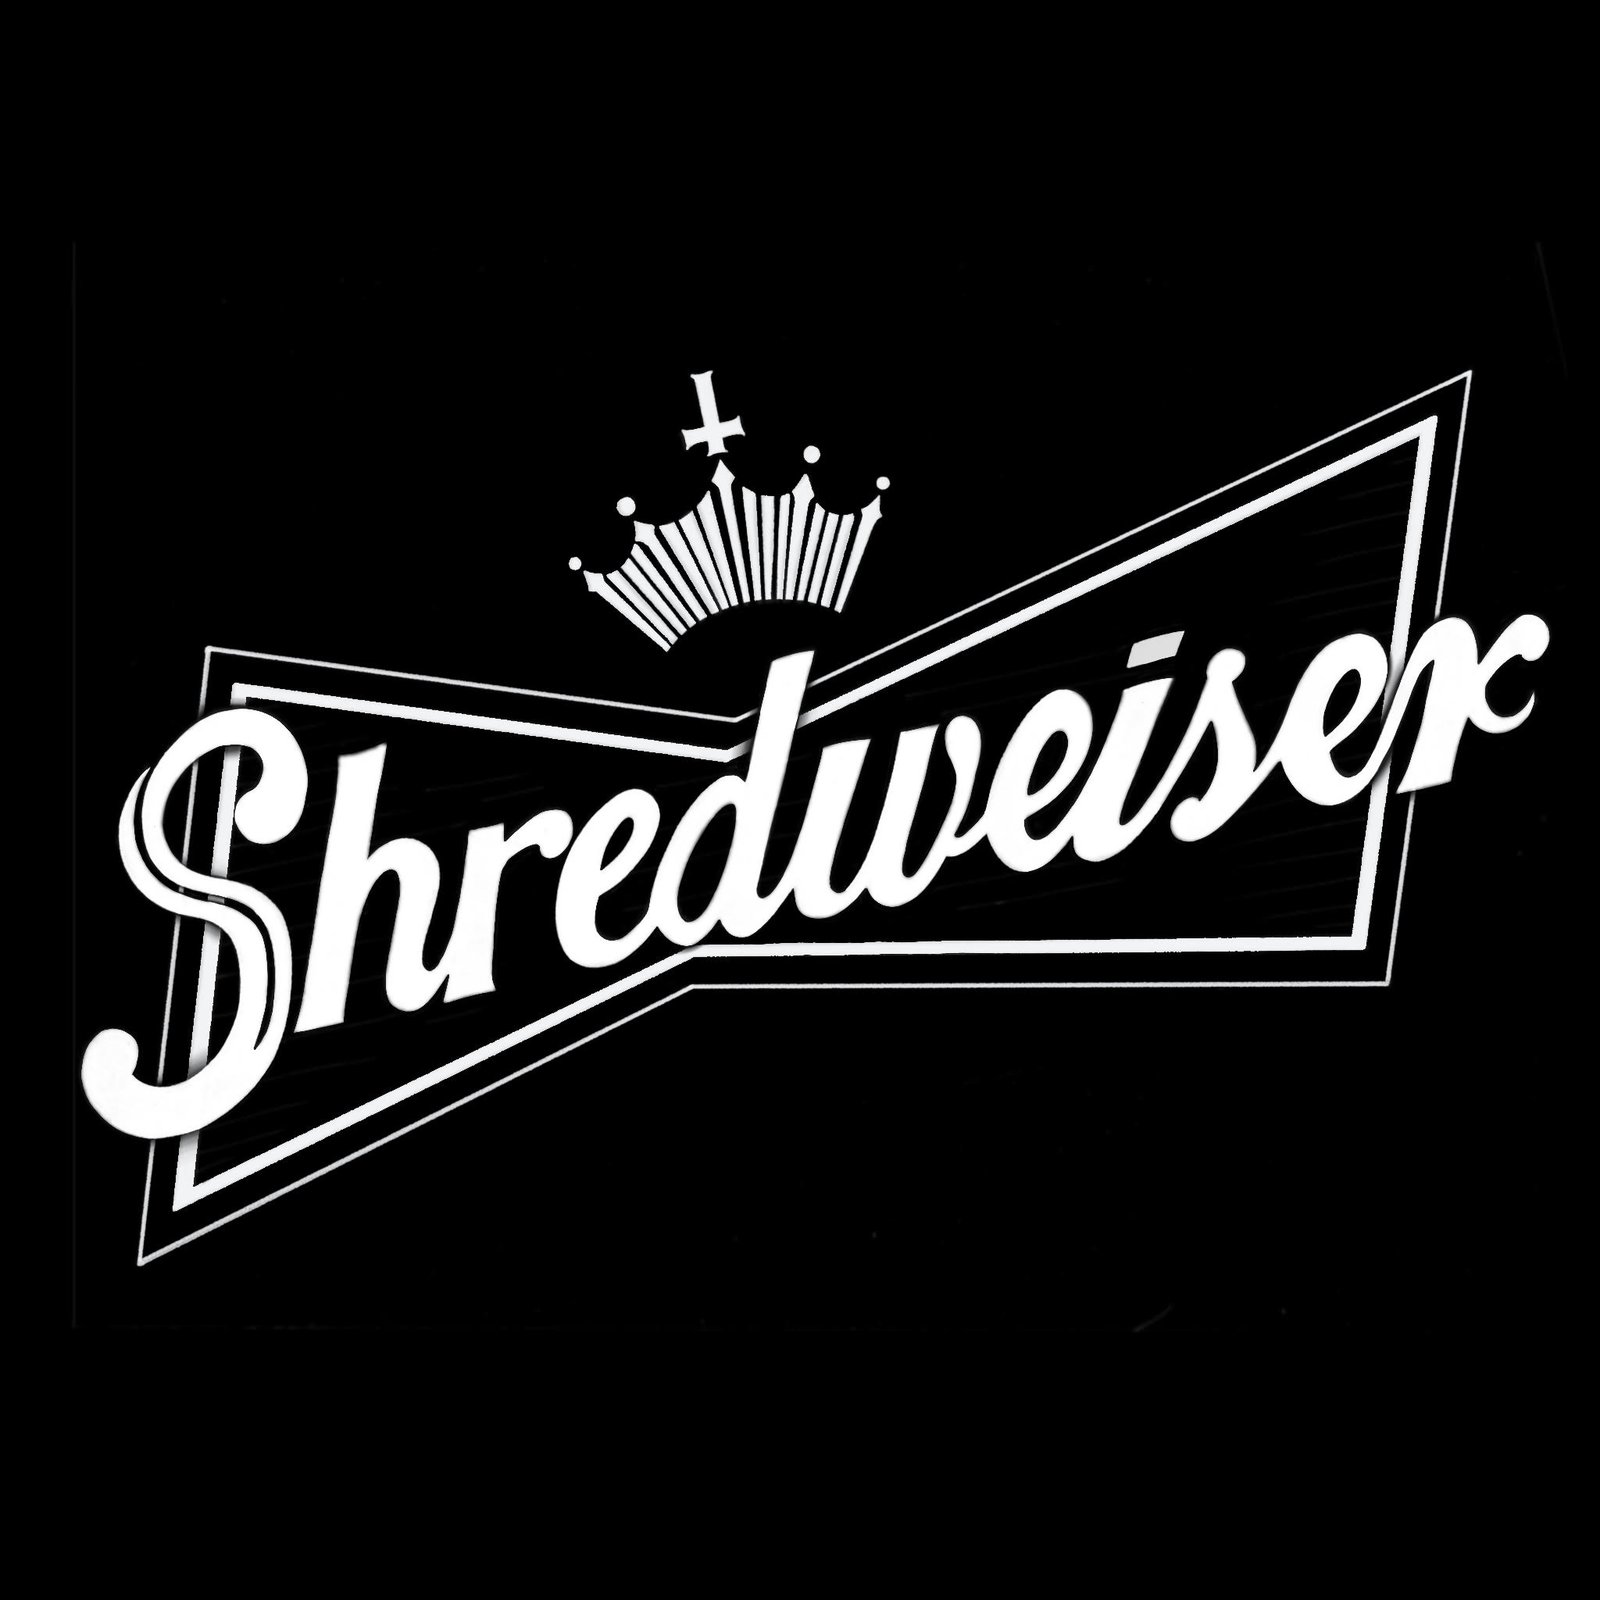 Shredweiser